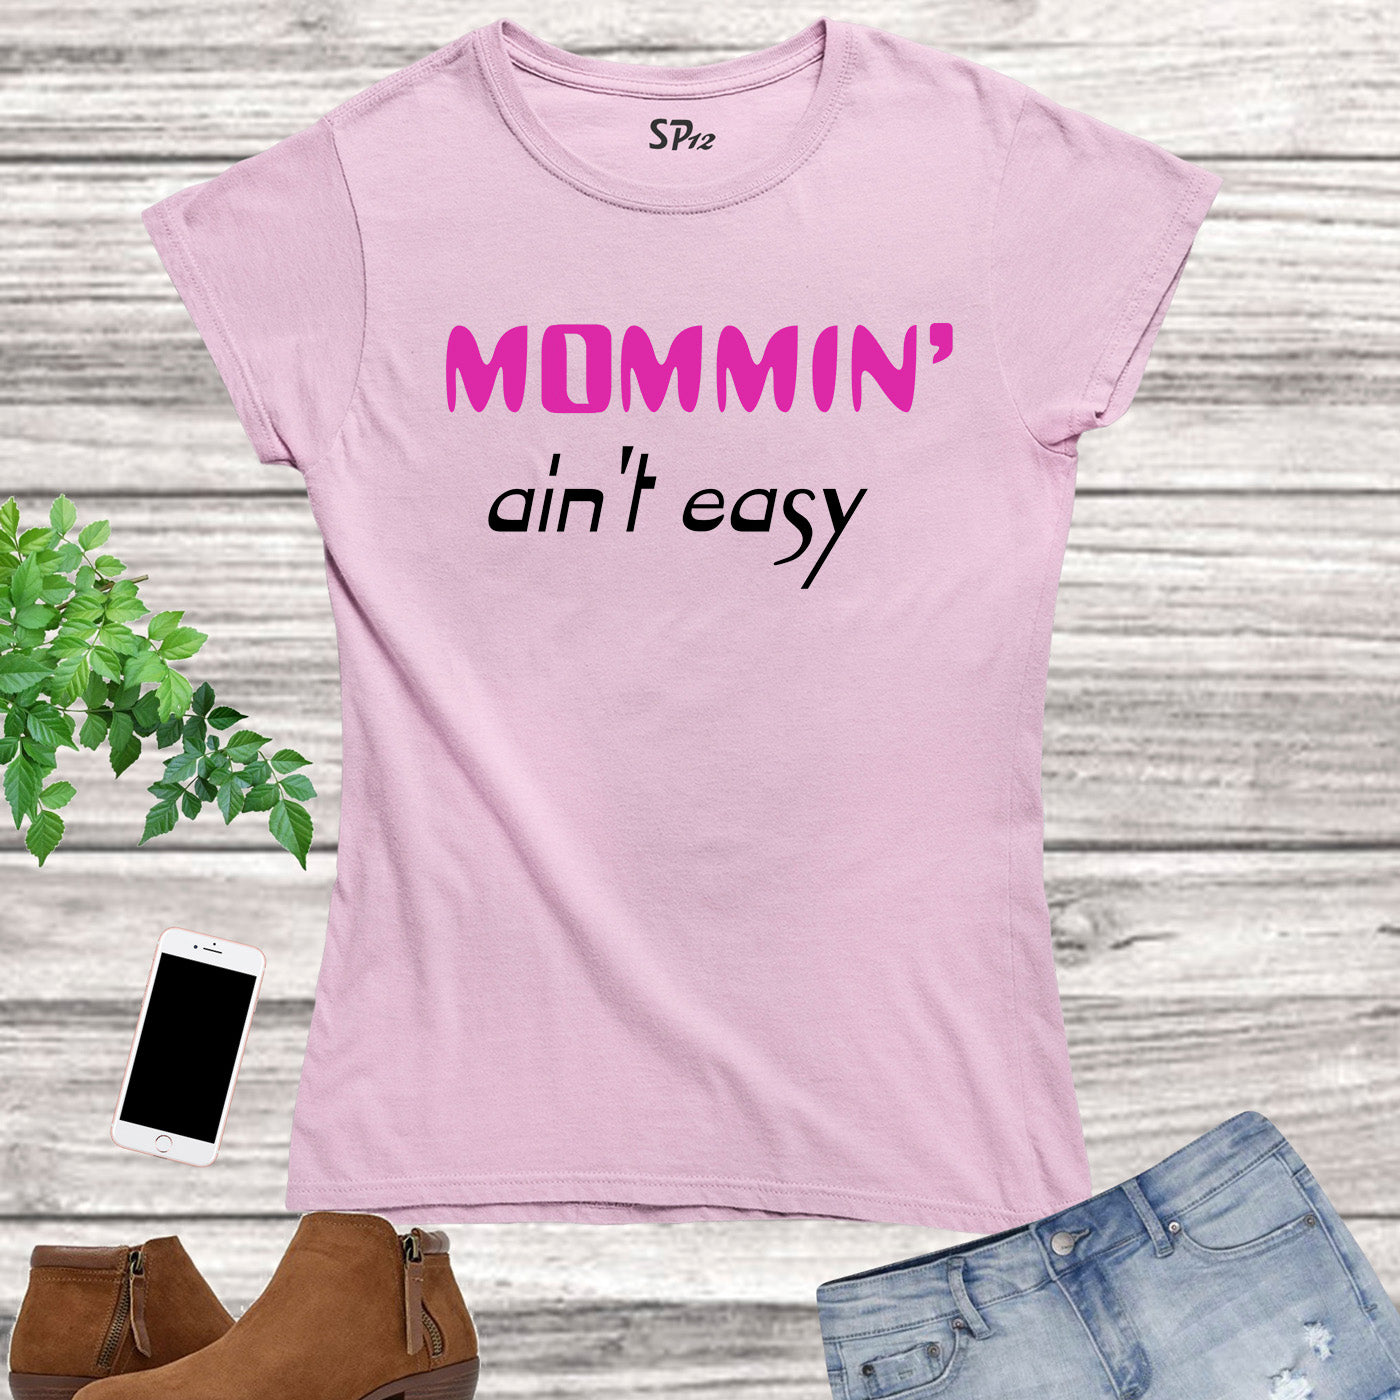 Mom Family T Shirt Mommin Ain't Easy Funny Slogan T-shirt Tee